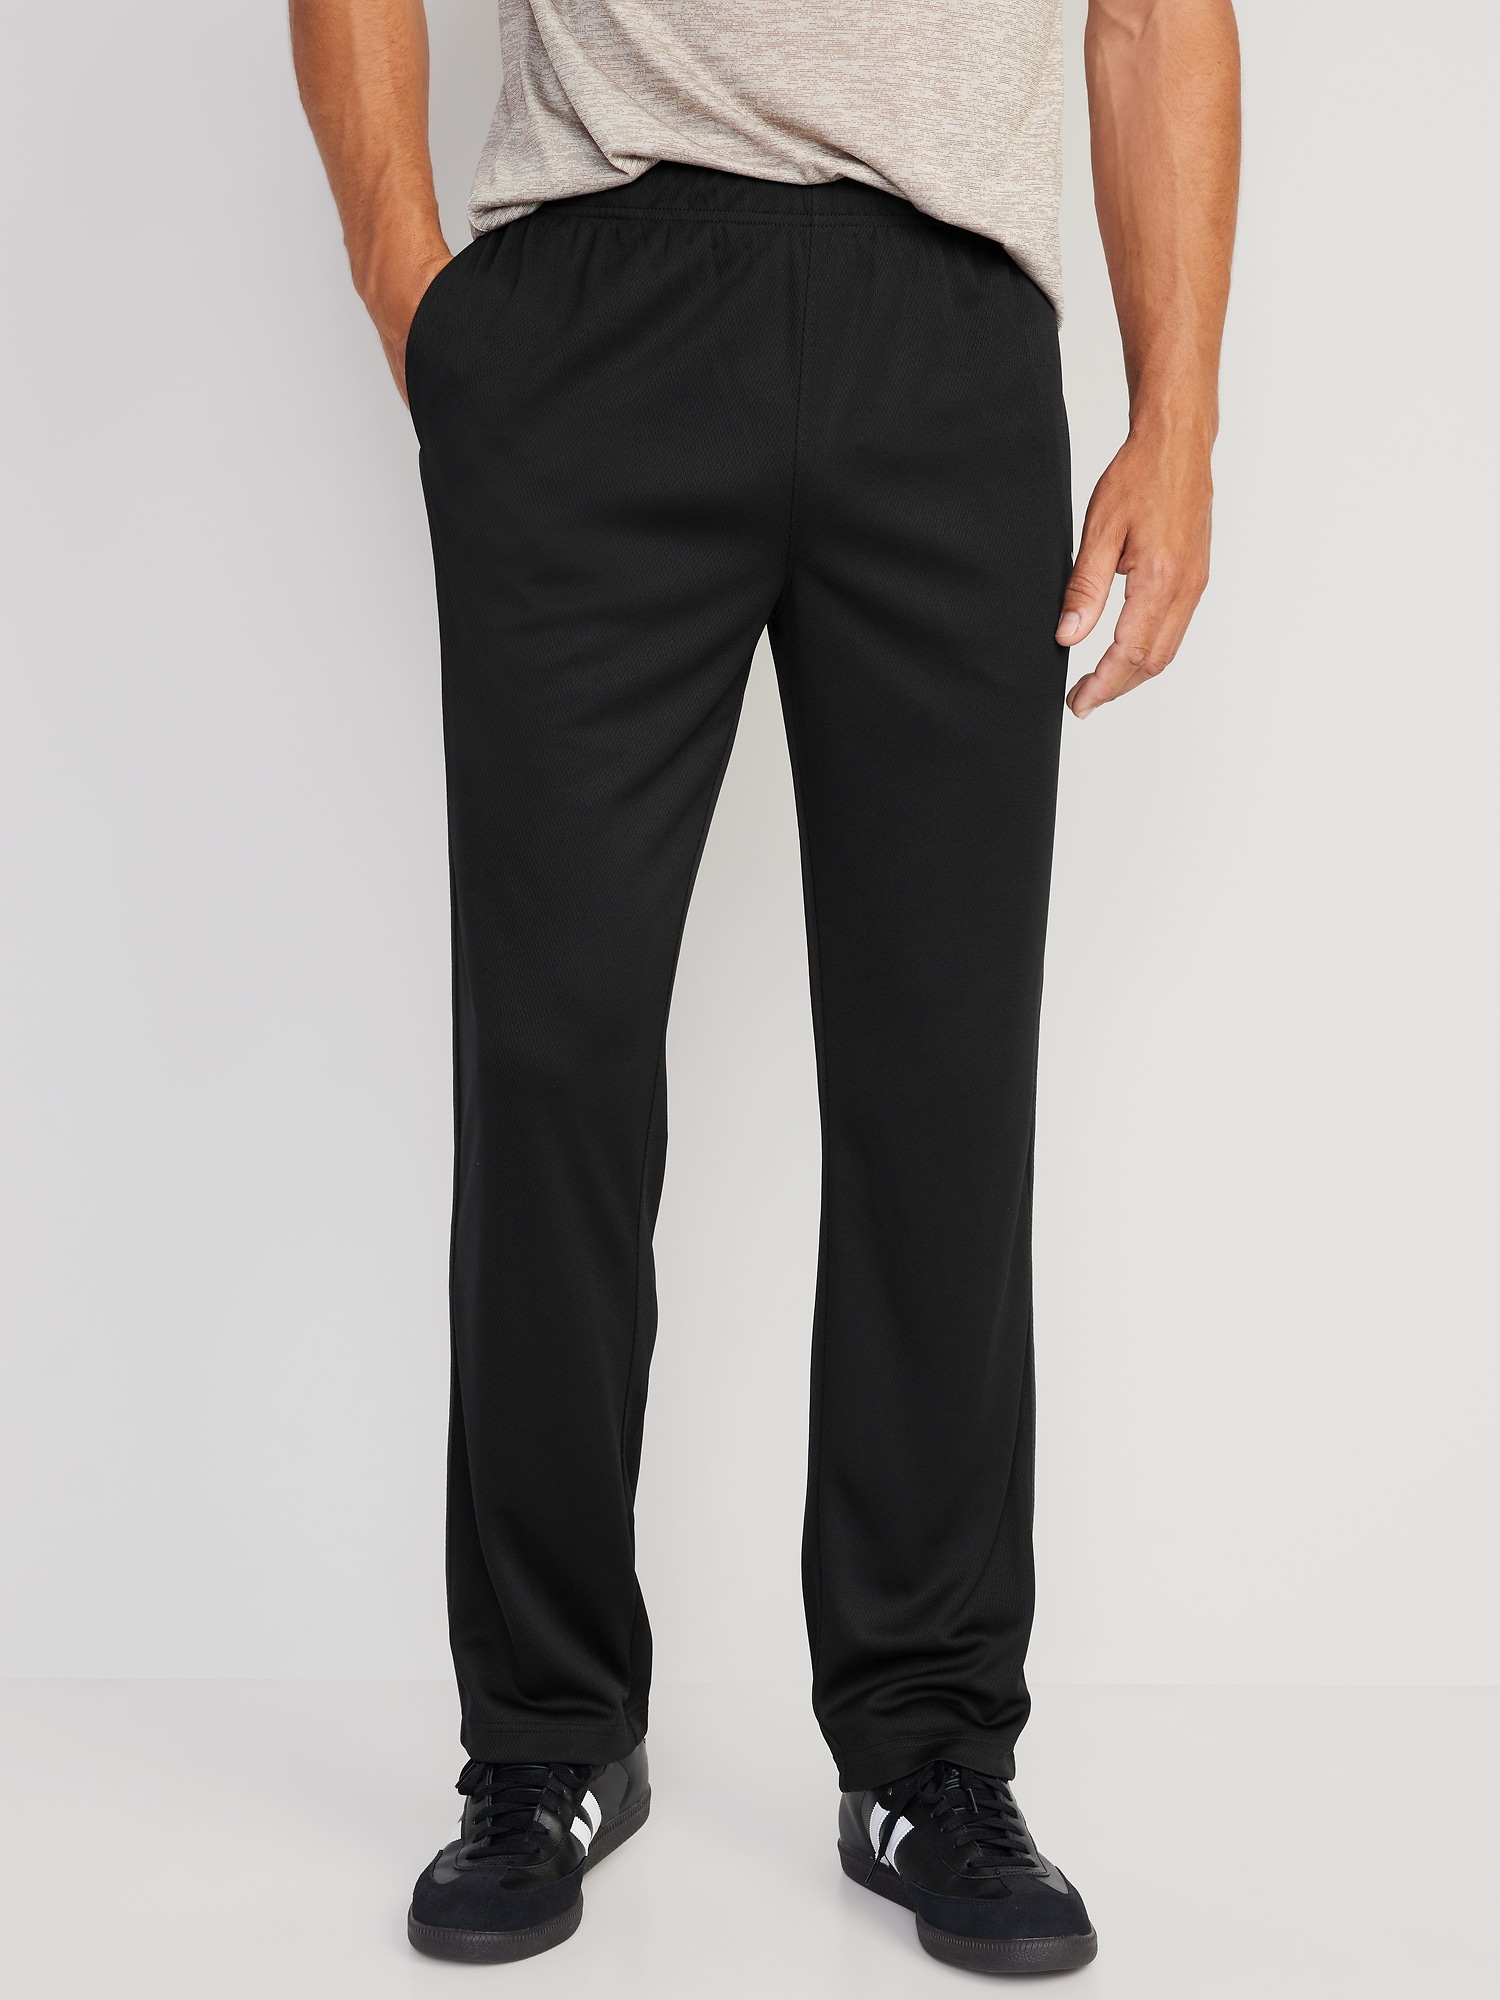 Men's Cozy Hidden Expandable Waist Dress Pants | Premium Stretch Texture  Weave Work to Weekend Pant (Black,29W×30L) at Amazon Men's Clothing store